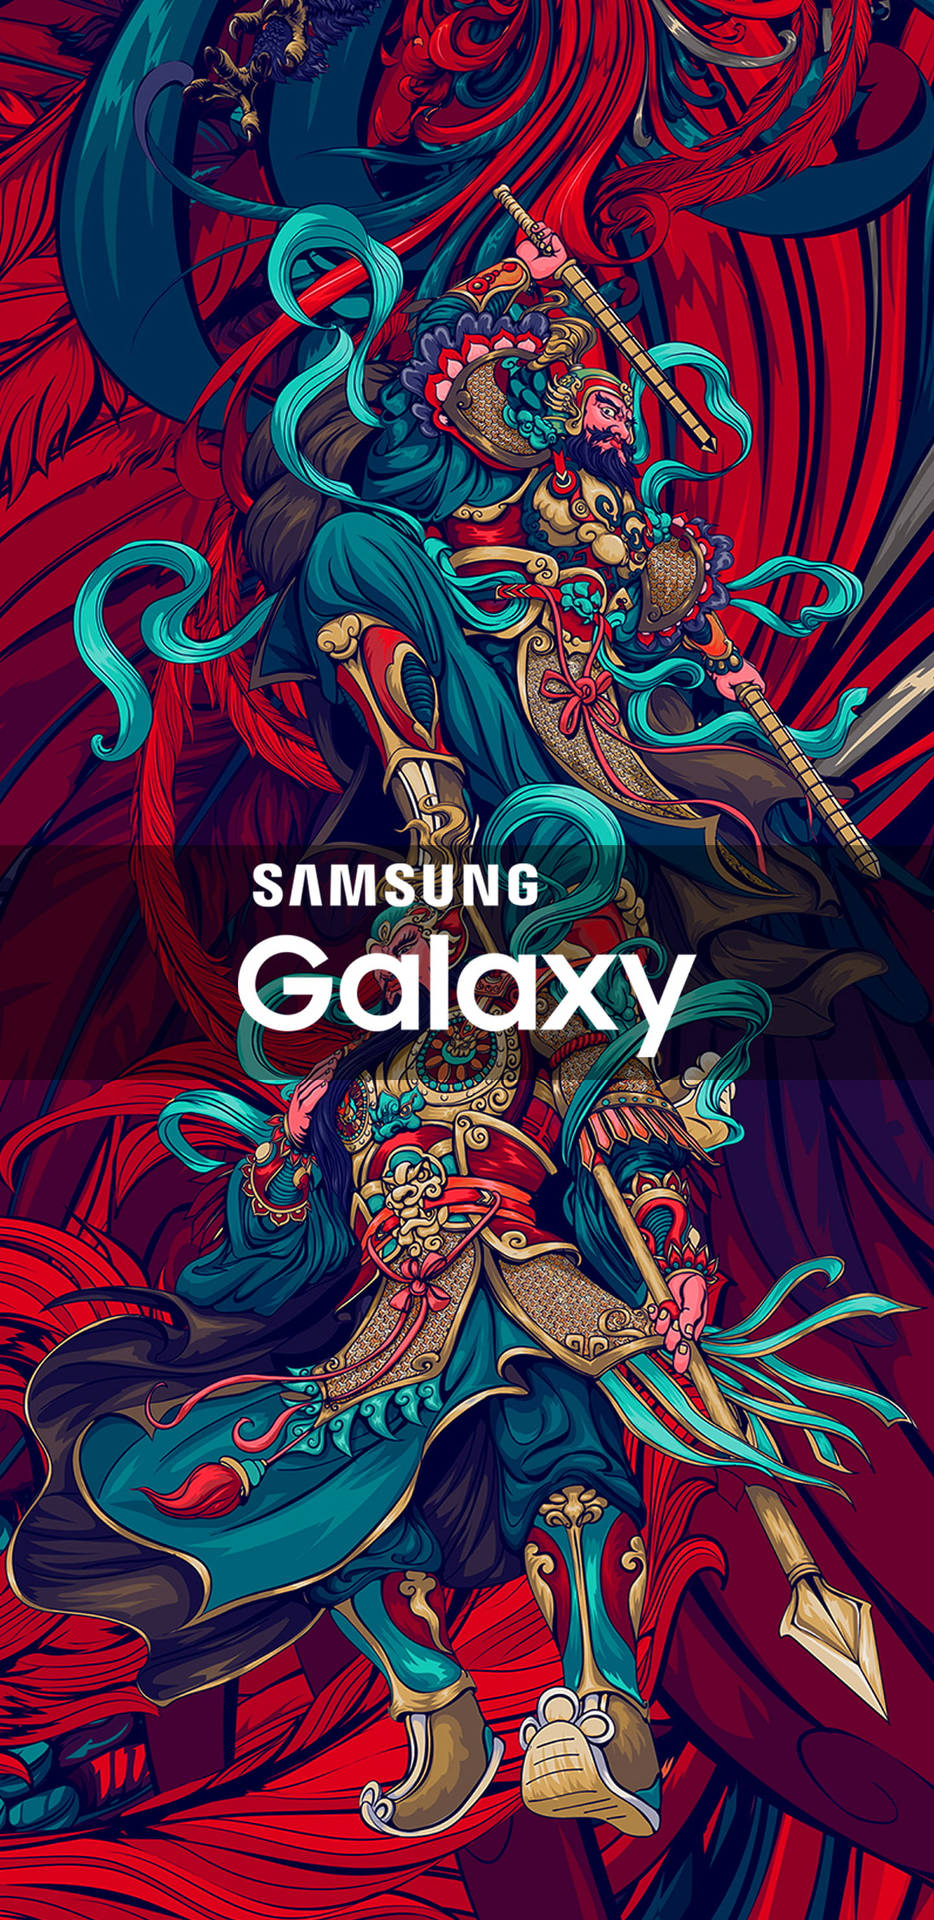 Samsunggalaxy Guerreiros Imperiais (note: 